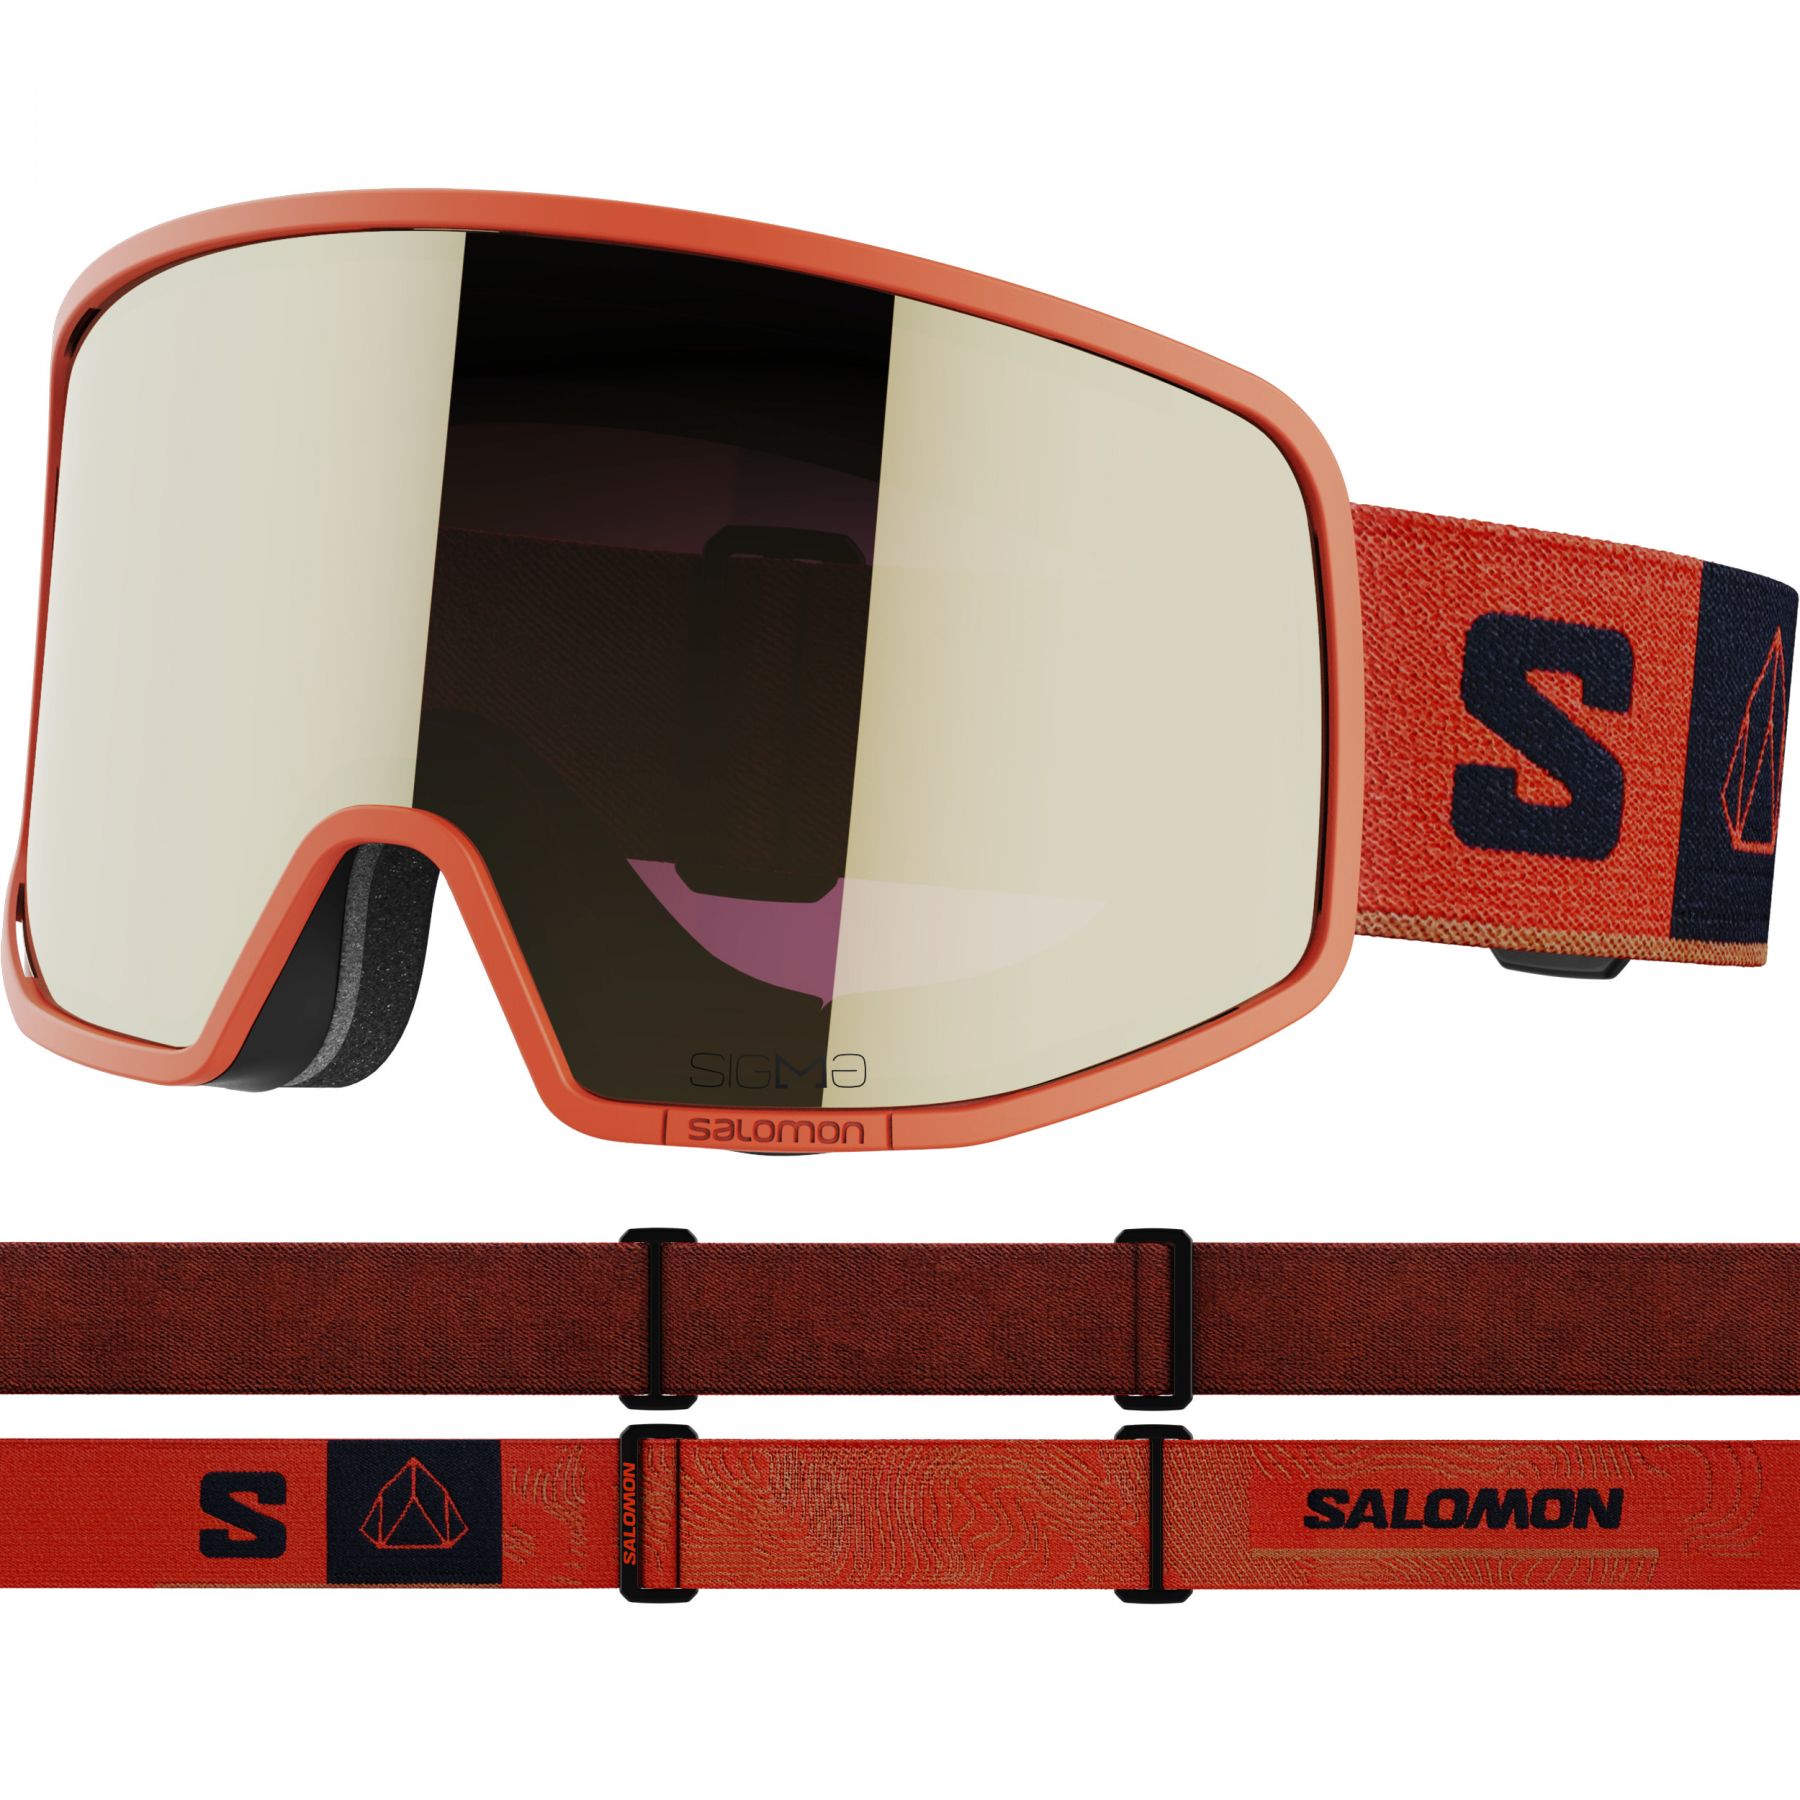 Brug Salomon Lo Fi Sigma, skibriller, orange til en forbedret oplevelse